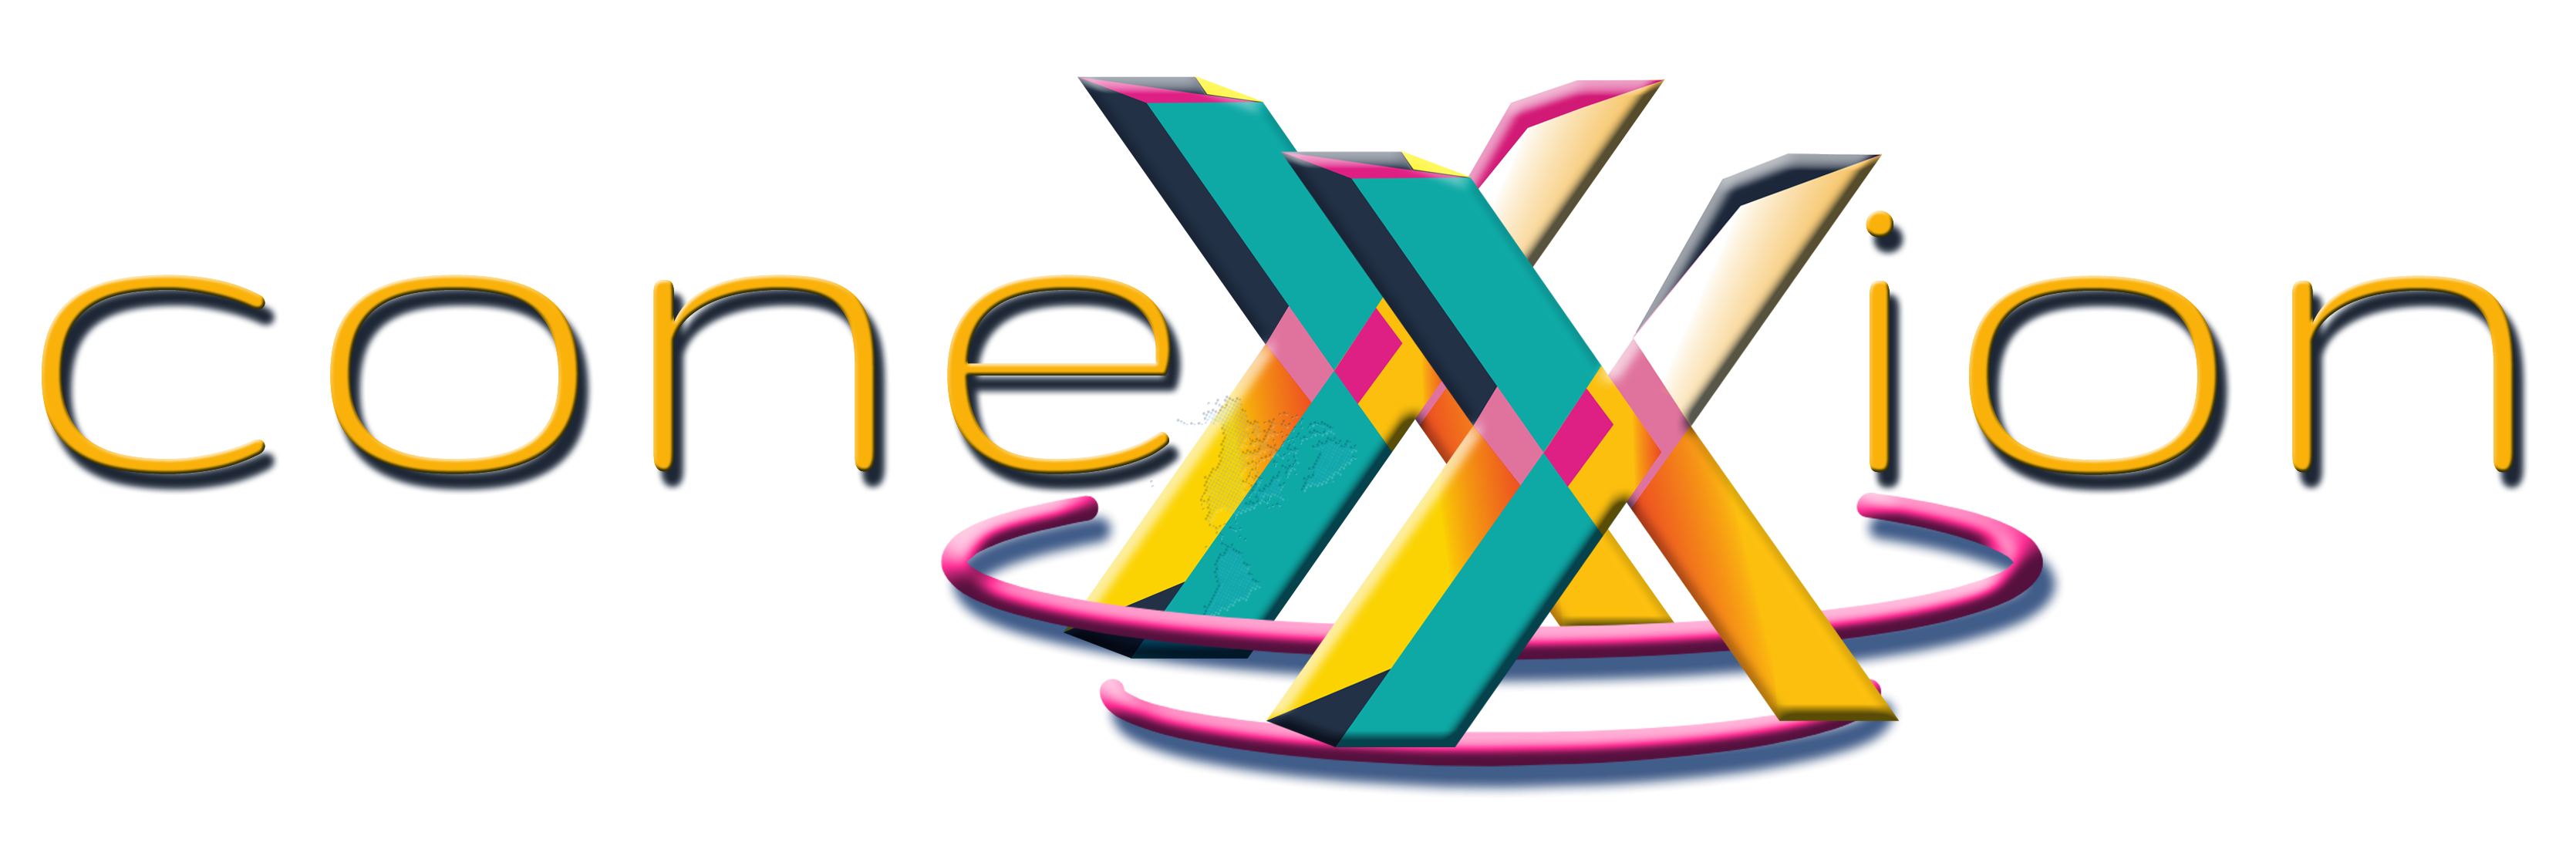 Logo conexxion city